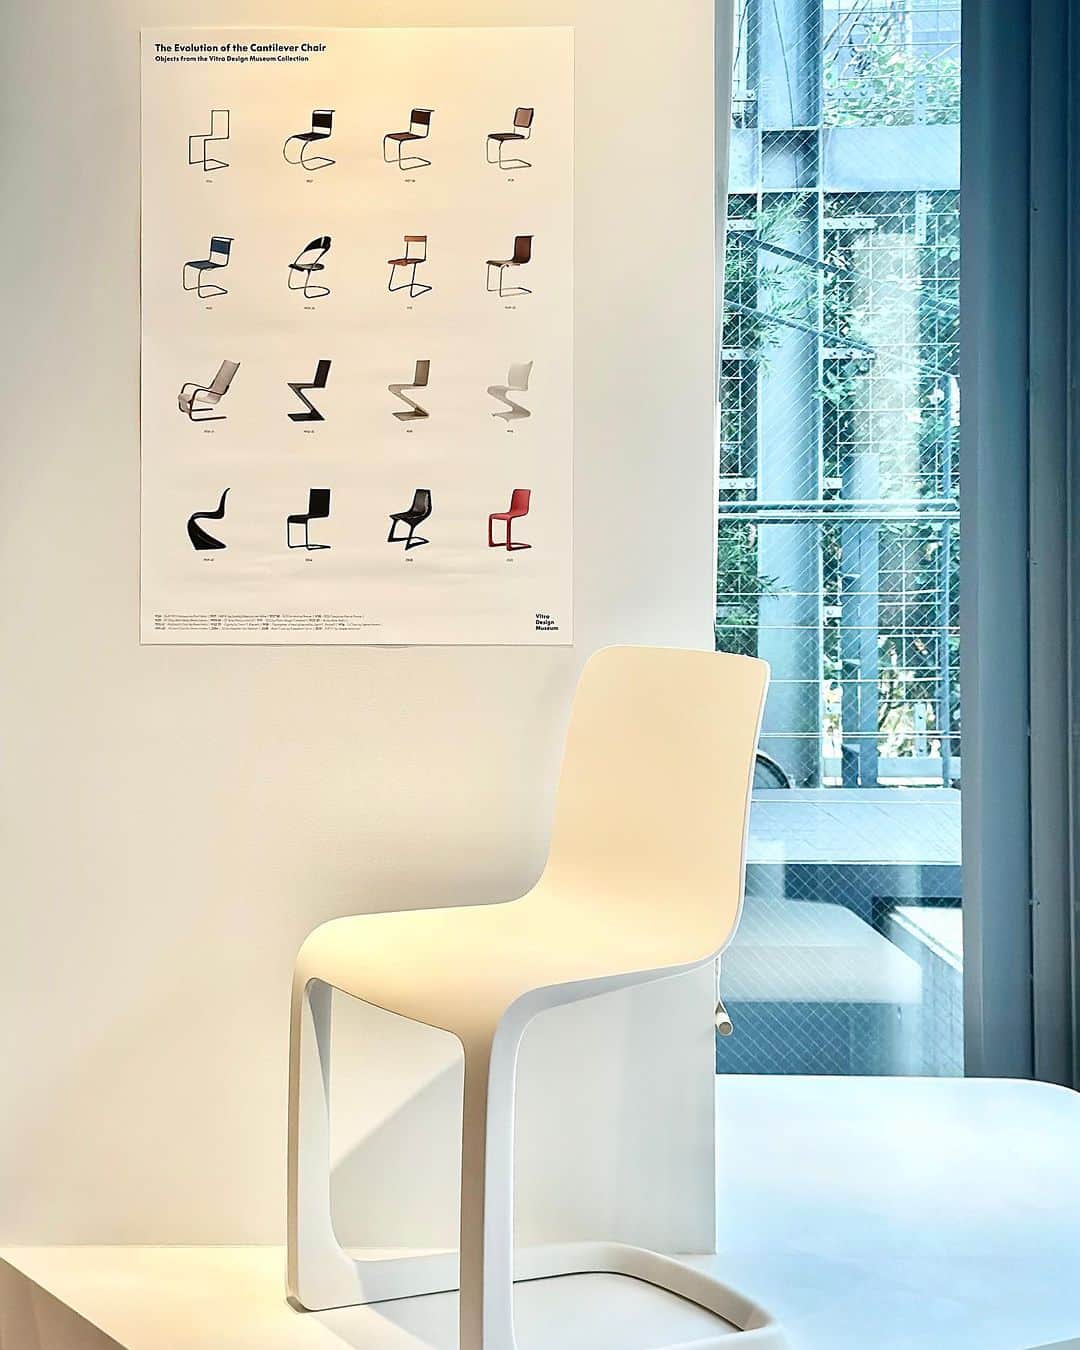 Vitra Japanのインスタグラム：「キャンチレバーチェアの進化を辿って   ジャスパー・モリソンとヴィトラが開発した椅子「エヴォック」は、さまざまなデザイナーが長年追い求めてきたキャンチレバーチェアの夢の結晶です。伝統的なキャンチレバーチェアの原理と機能性、すべてをポリプロピレンでつくることに成功した画期的な製品で、究極のシンプルさが魅力です。   Vitra Online Shopでは、10月末までにヴィトラのチェアをご購入いただくと「パントン チェア」や「.05」から「エヴォック」まで、キャンチレバーチェアの歴史と進化を辿る、非売品のヴィトラデザインミュージアムによるポスターをプレゼントします。ポスターはご用意した数量が無くなり次第終了。この機会にシンプルでスタイリッシュなポスターをヴィトラチェアとともに手に入れて。   #VITRACHAIR #Vitra #VitraJapan #Evoc #JasperMorrison #ヴィトラ #ヴィトラジャパン #エヴォック #ジャスパーモリソン #ダイニングチェア #名作椅子 #名作家具 #椅子好き #暮らしを楽しむ #快適な暮らし #インテリア #インテリアコーディネート #モダンインテリア #デザイン好き#ポスタープレゼント」